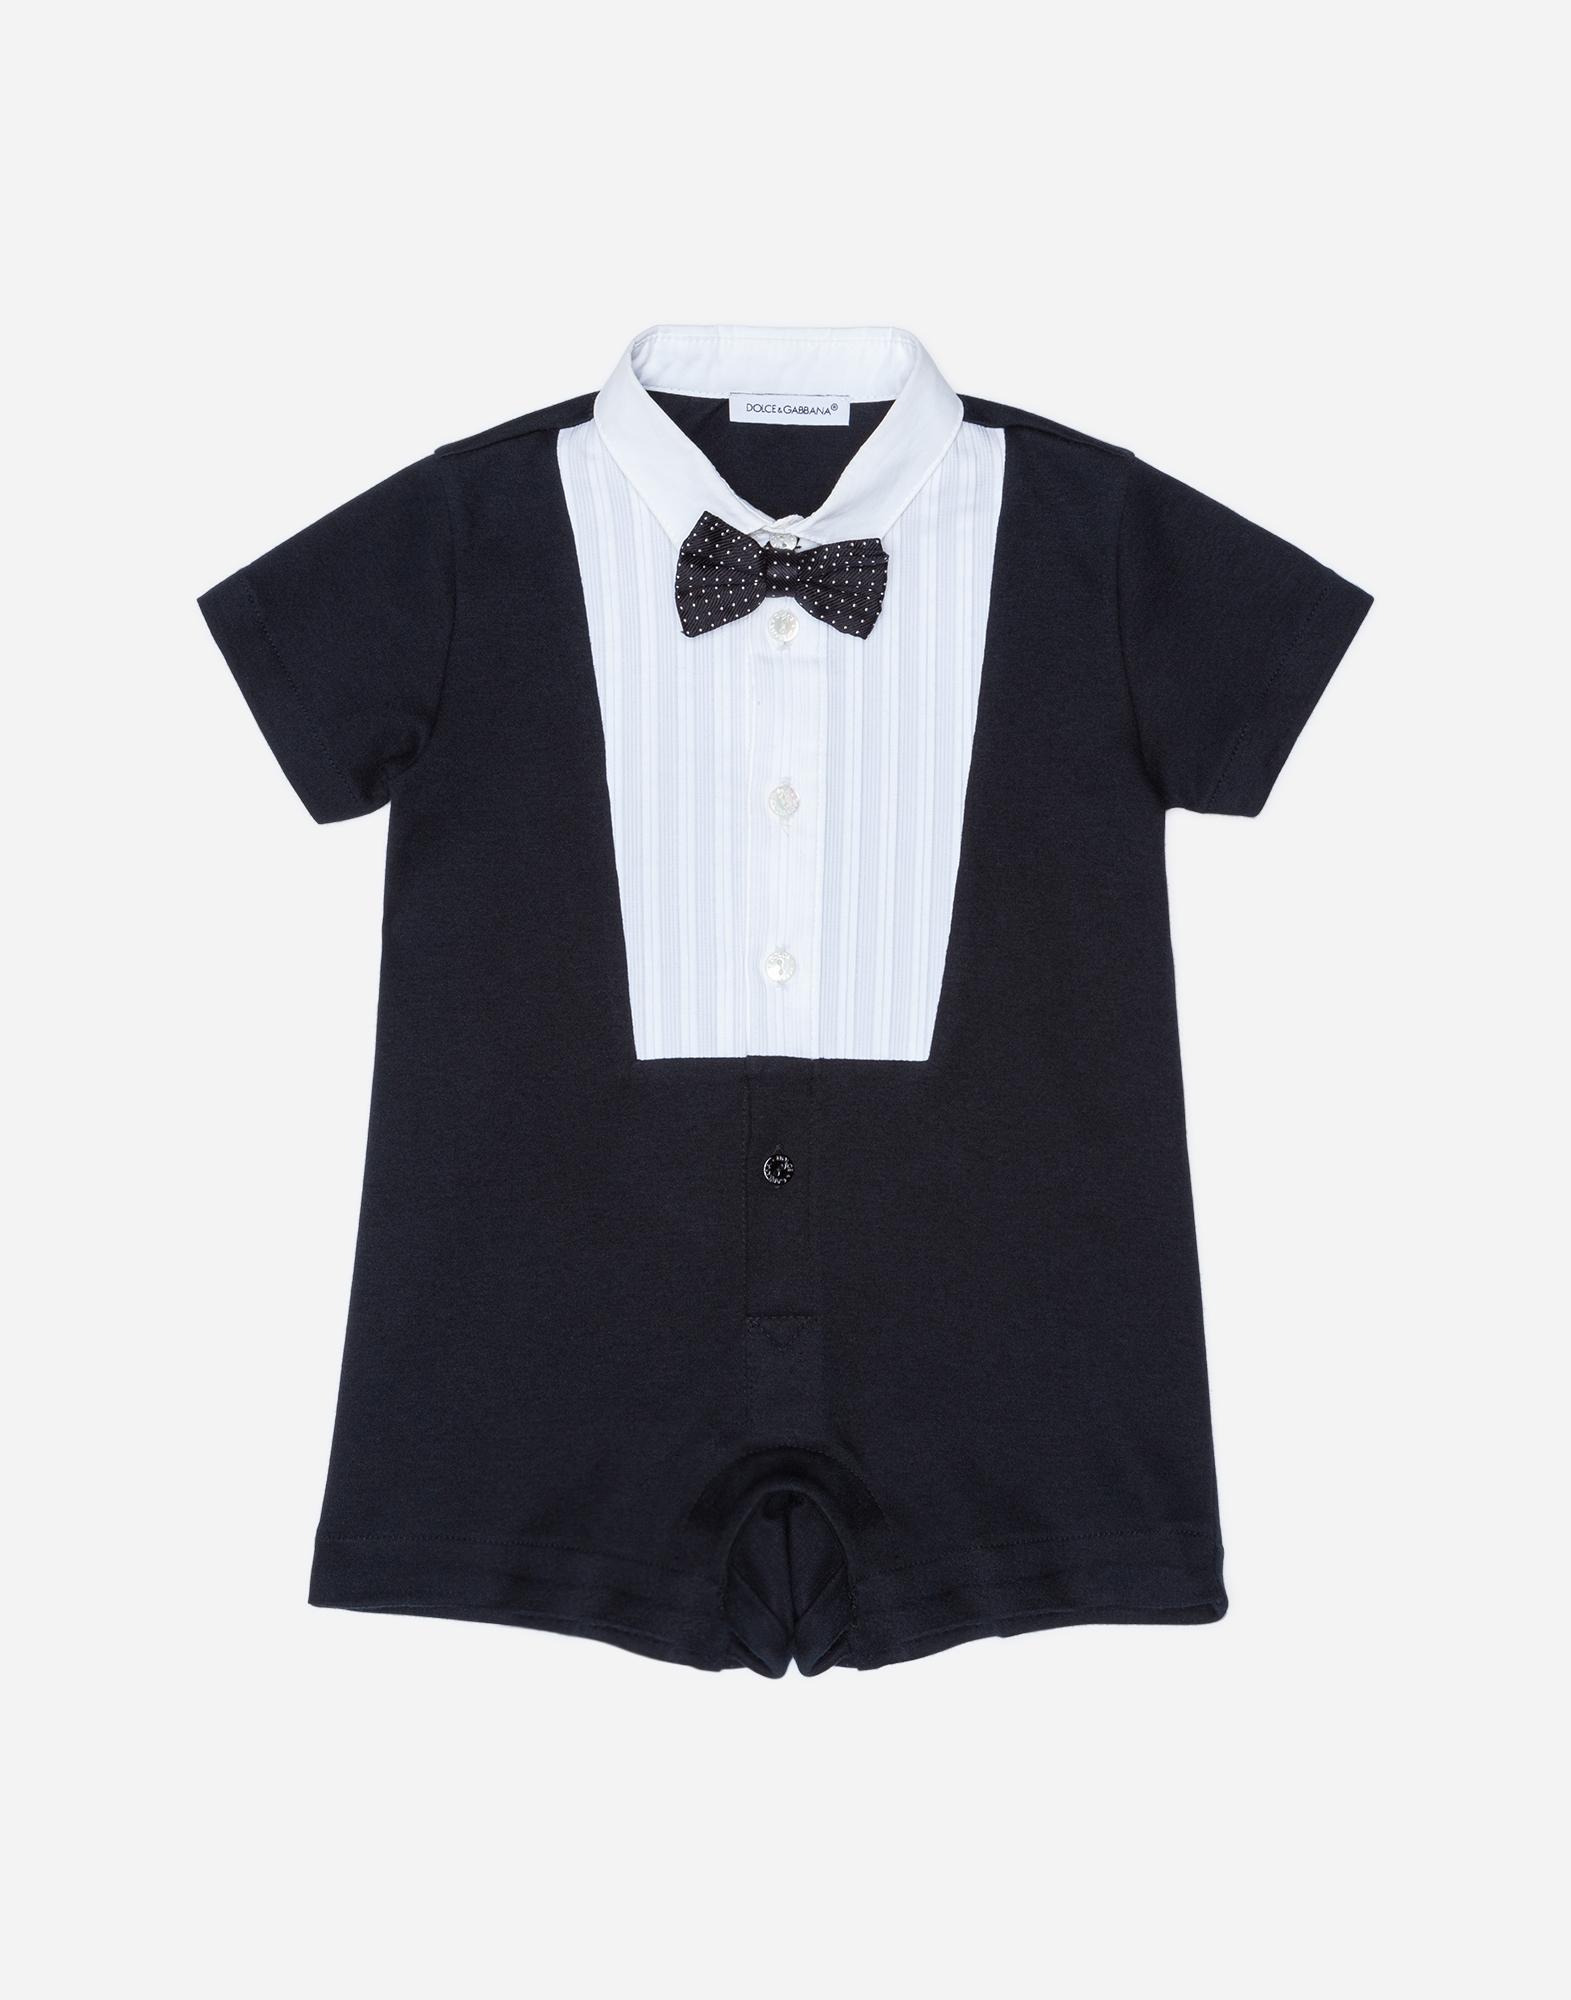 Dolce & Gabbana Babies' Tuxedo Onesie In Cotton In Black